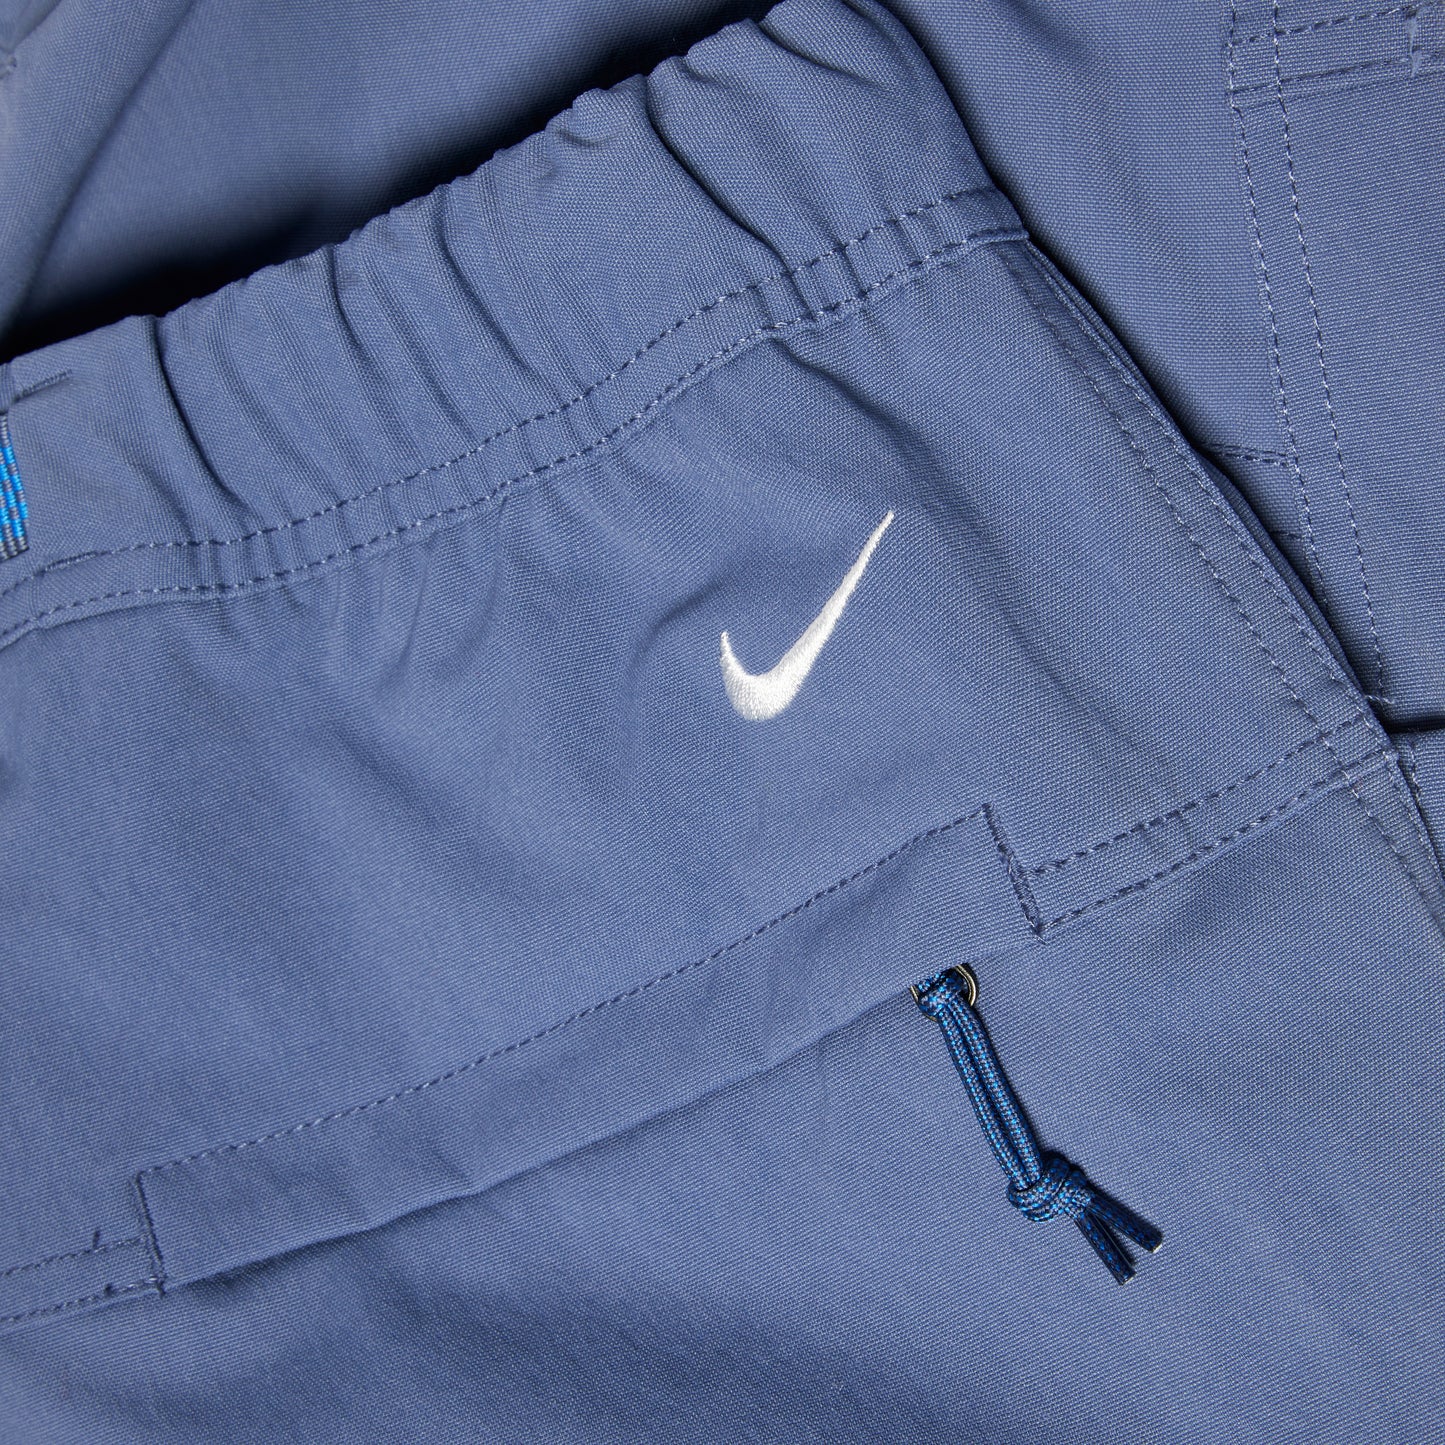 Nike ACG "Smith Summit" Cargo Pant (Diffused Blue/Light Photo Blue/Summit White)